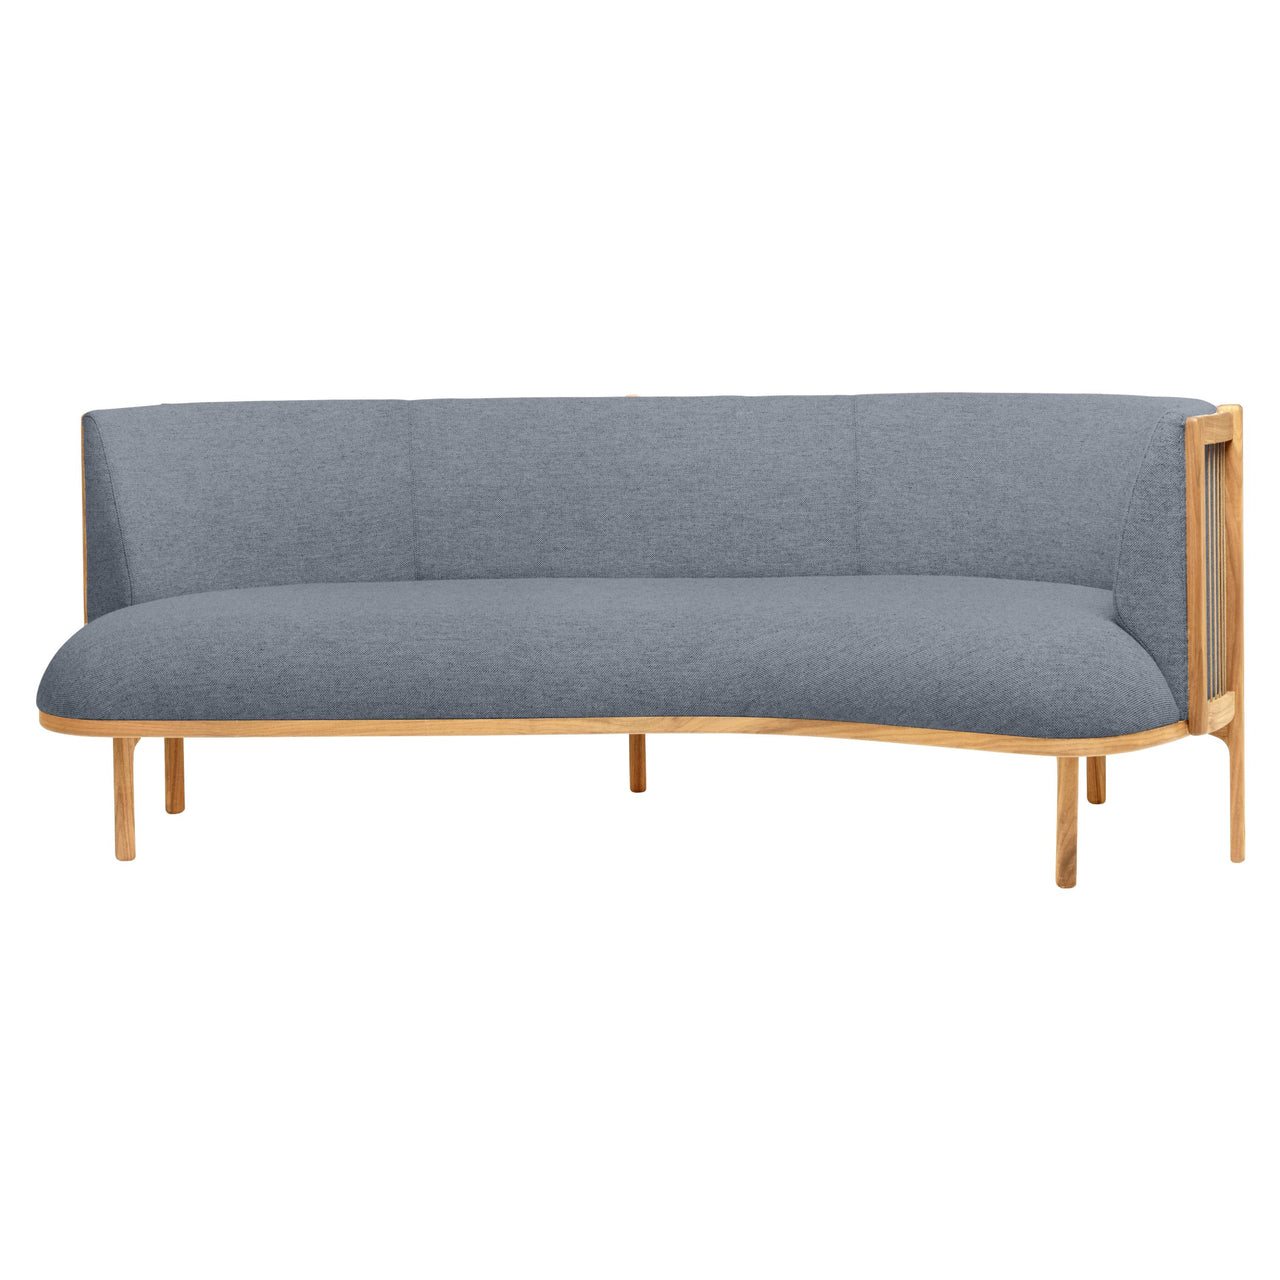 RF1903 Sideways Sofa: Oiled Oak + Right